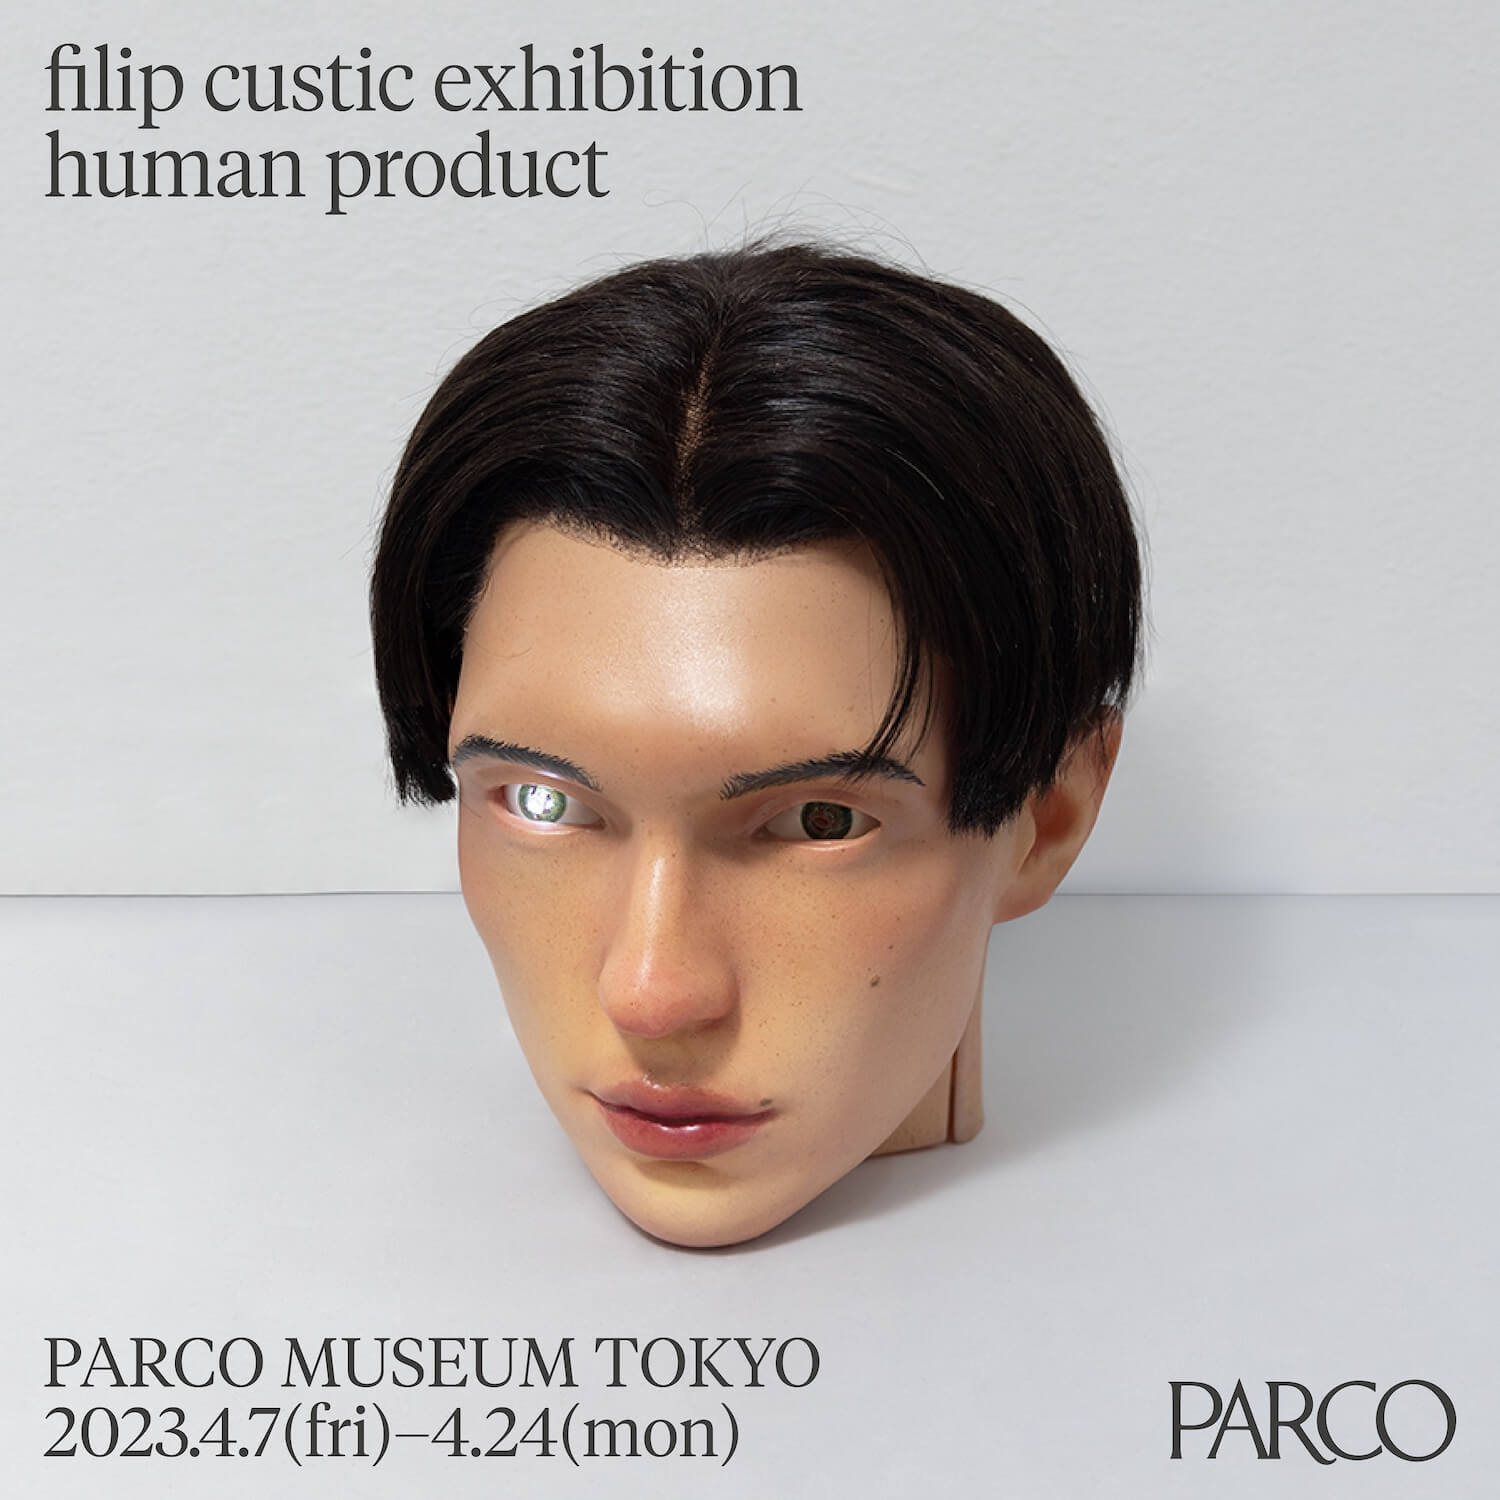 インターネット時代を生きる人間のアイデンティティに問いかける、フィリップ・クスティックが日本で初個展を開催。